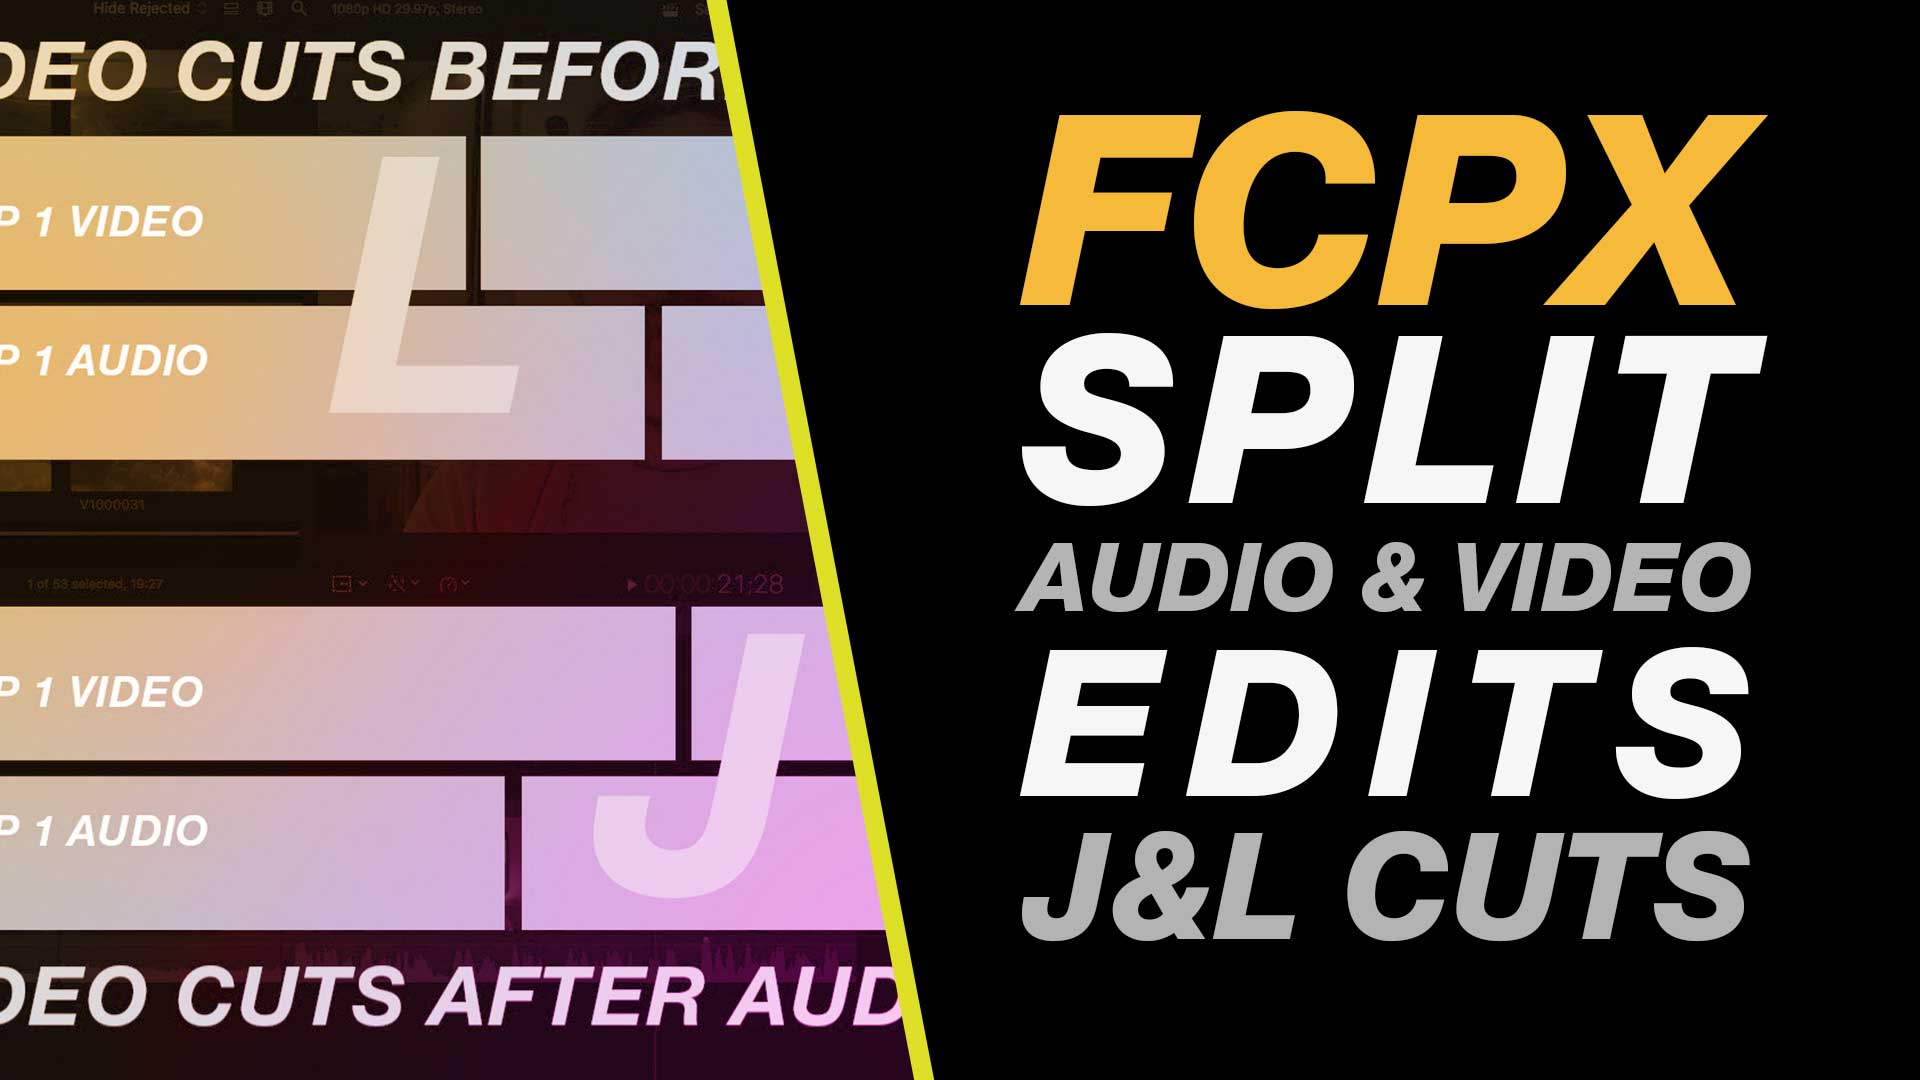 Final Cut Pro X: Split Audio & Video J & L Cuts in Final Cut Pro Free Mac Tutorial #fcpx